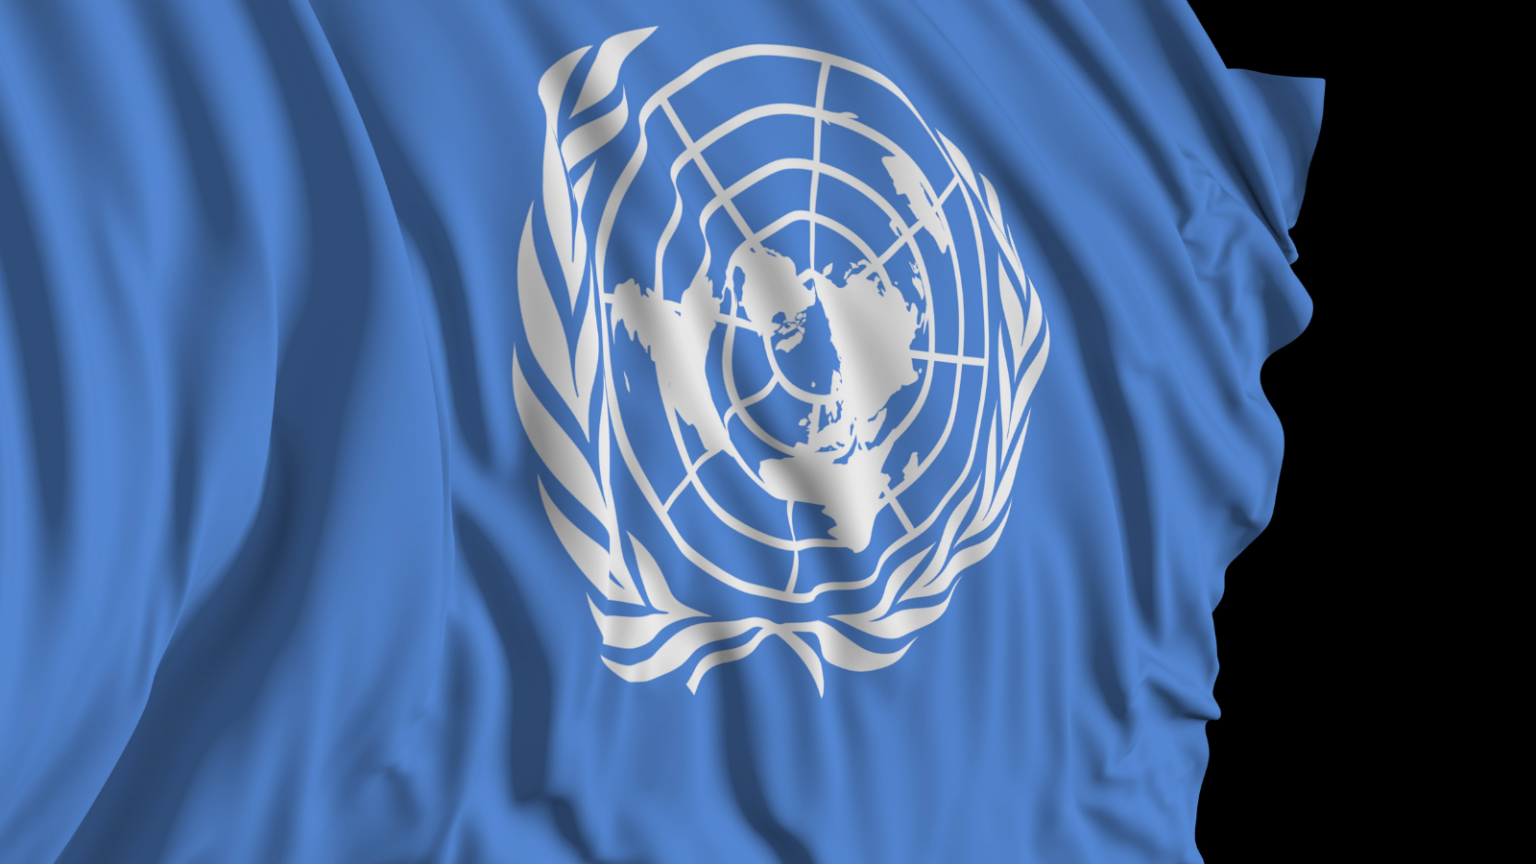 A close up of the UN flag.